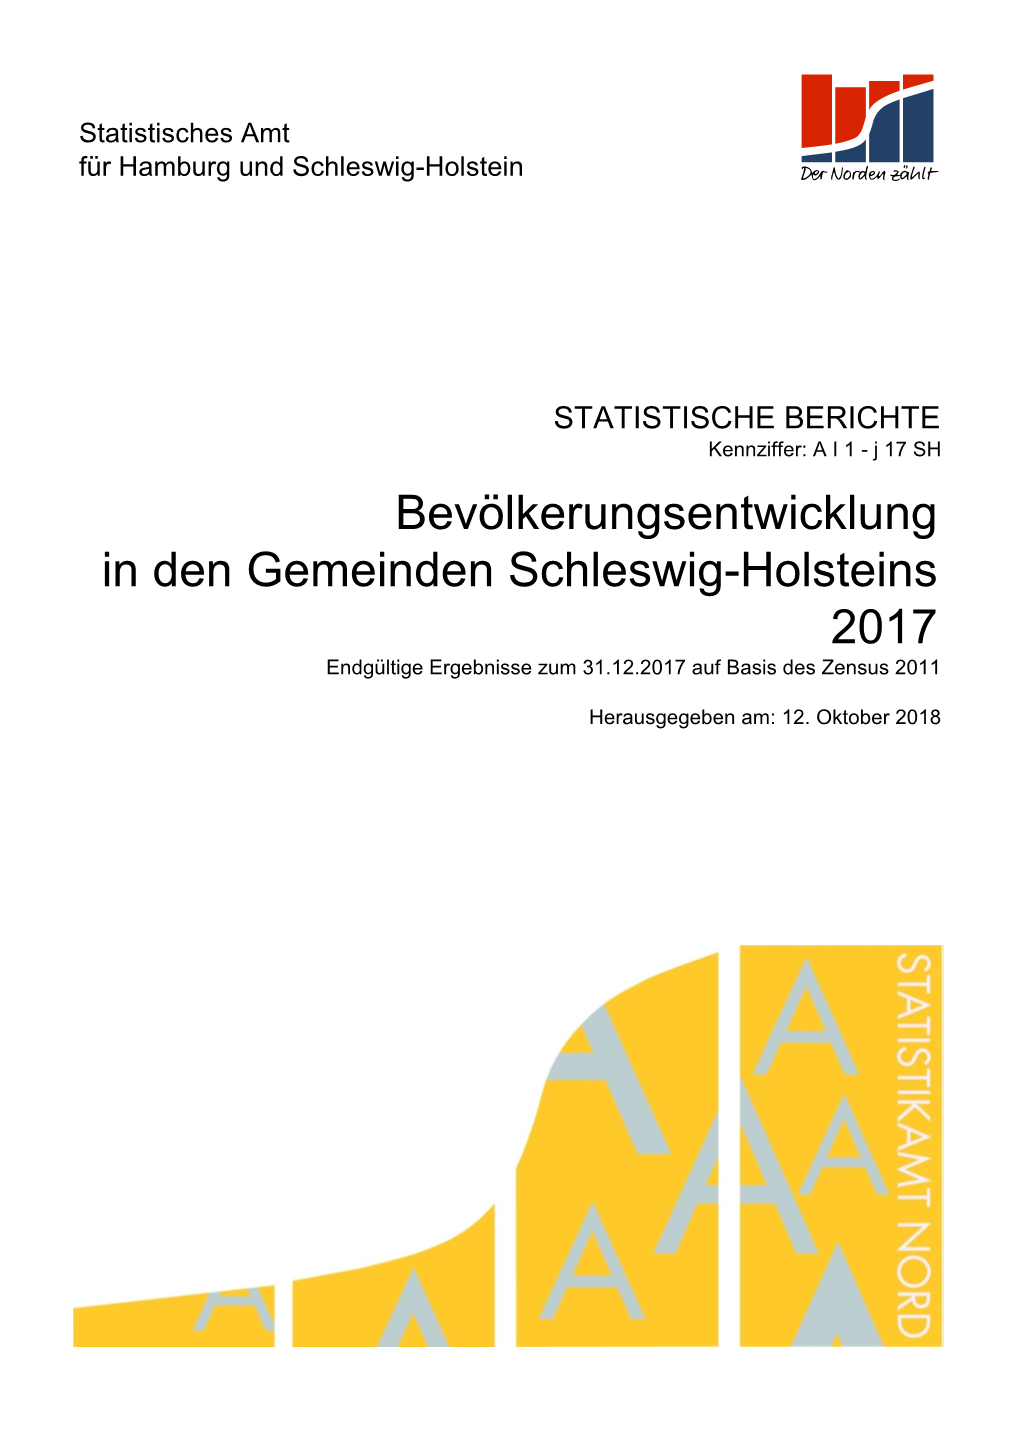 2017 Bevölkerungsentwicklung in Den Gemeinden Schleswig-Holsteins